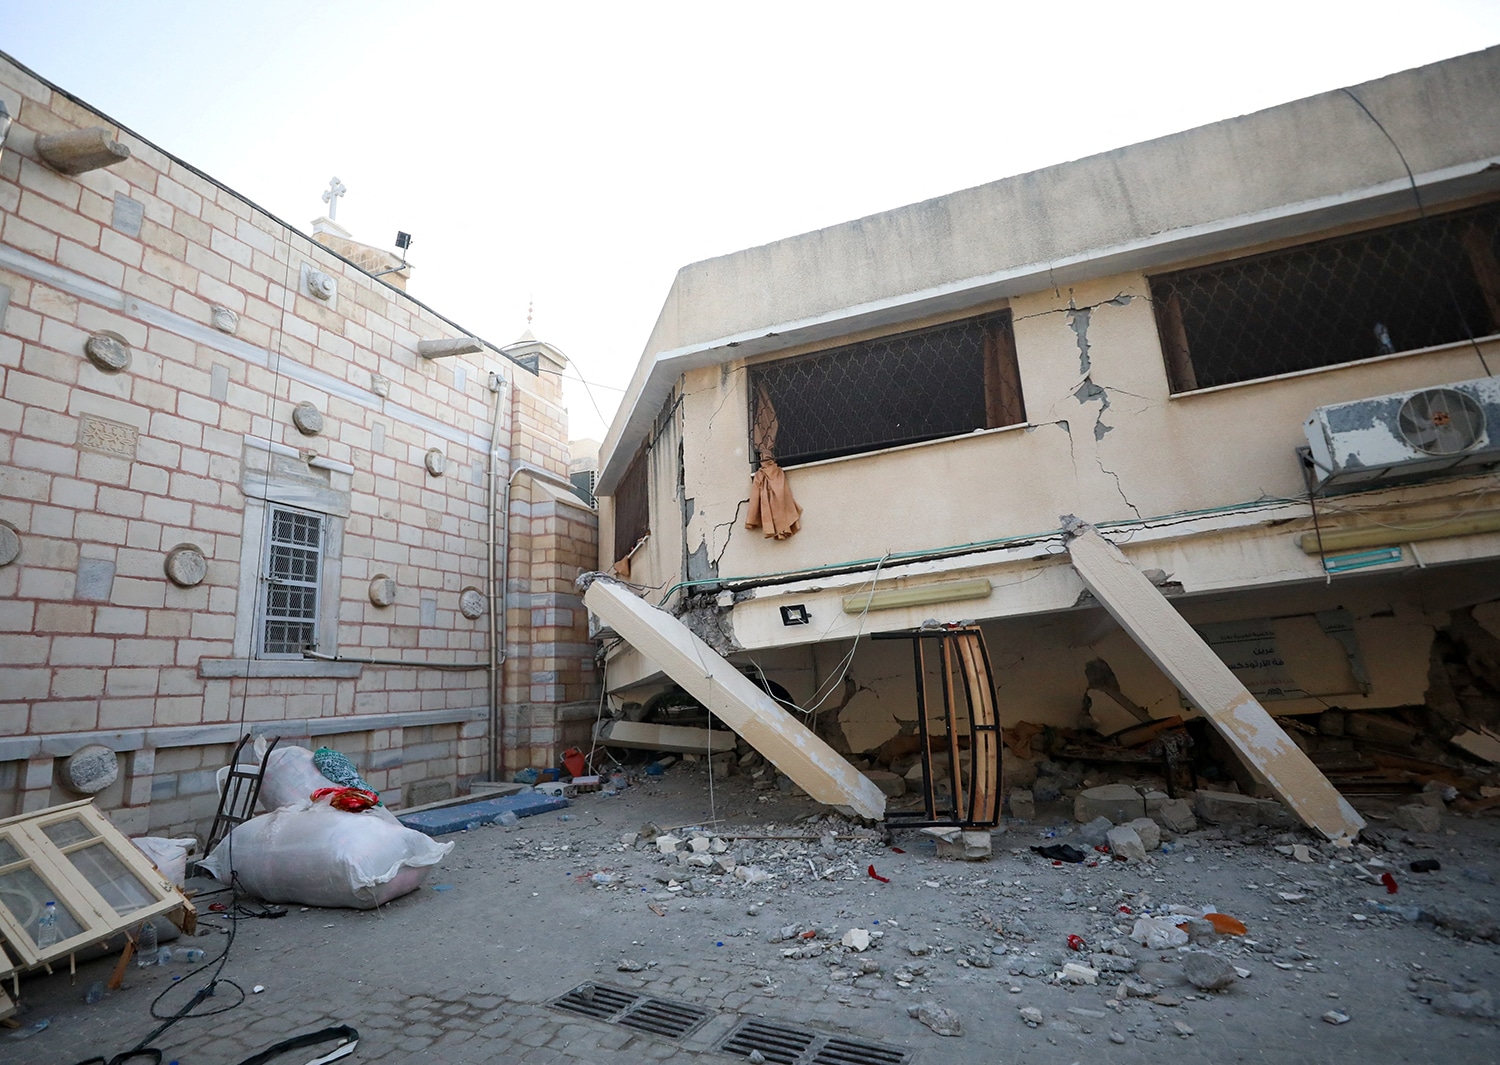 GREEK ORTHODOX CHURCH GAZA BOMBING AFTERMATH